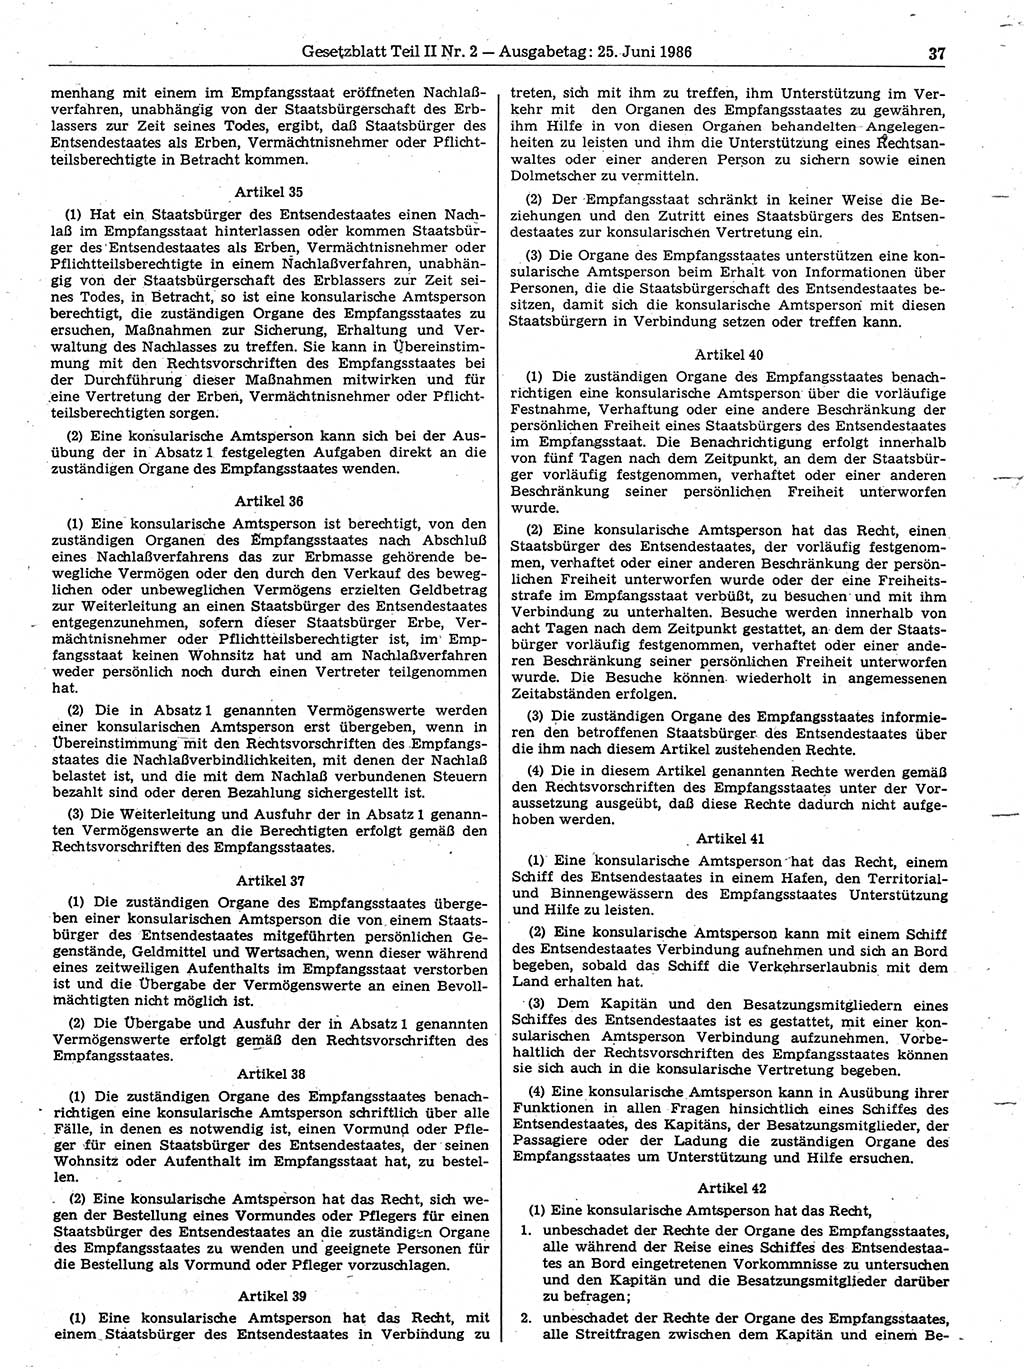 Gesetzblatt (GBl.) der Deutschen Demokratischen Republik (DDR) Teil ⅠⅠ 1986, Seite 37 (GBl. DDR ⅠⅠ 1986, S. 37)